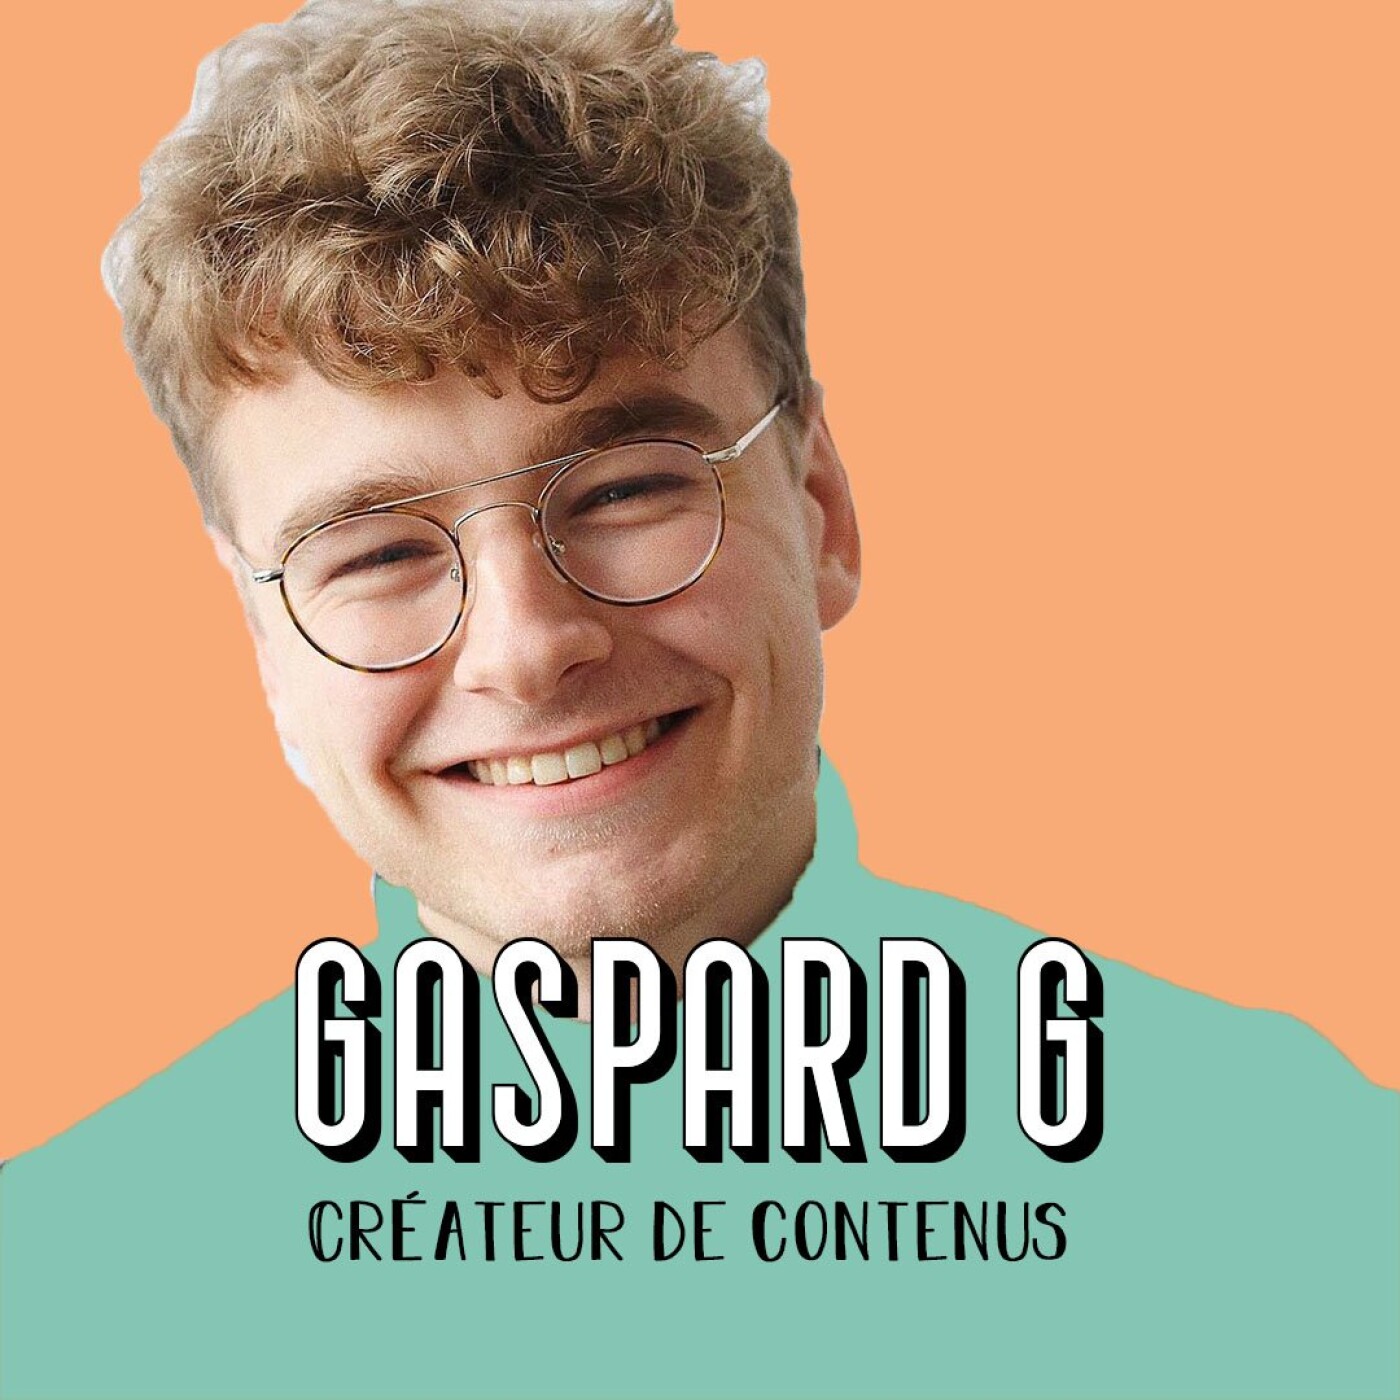 [EXTRAIT] - Gaspard G, Créateur de contenus - Comment bien s'entourer ?